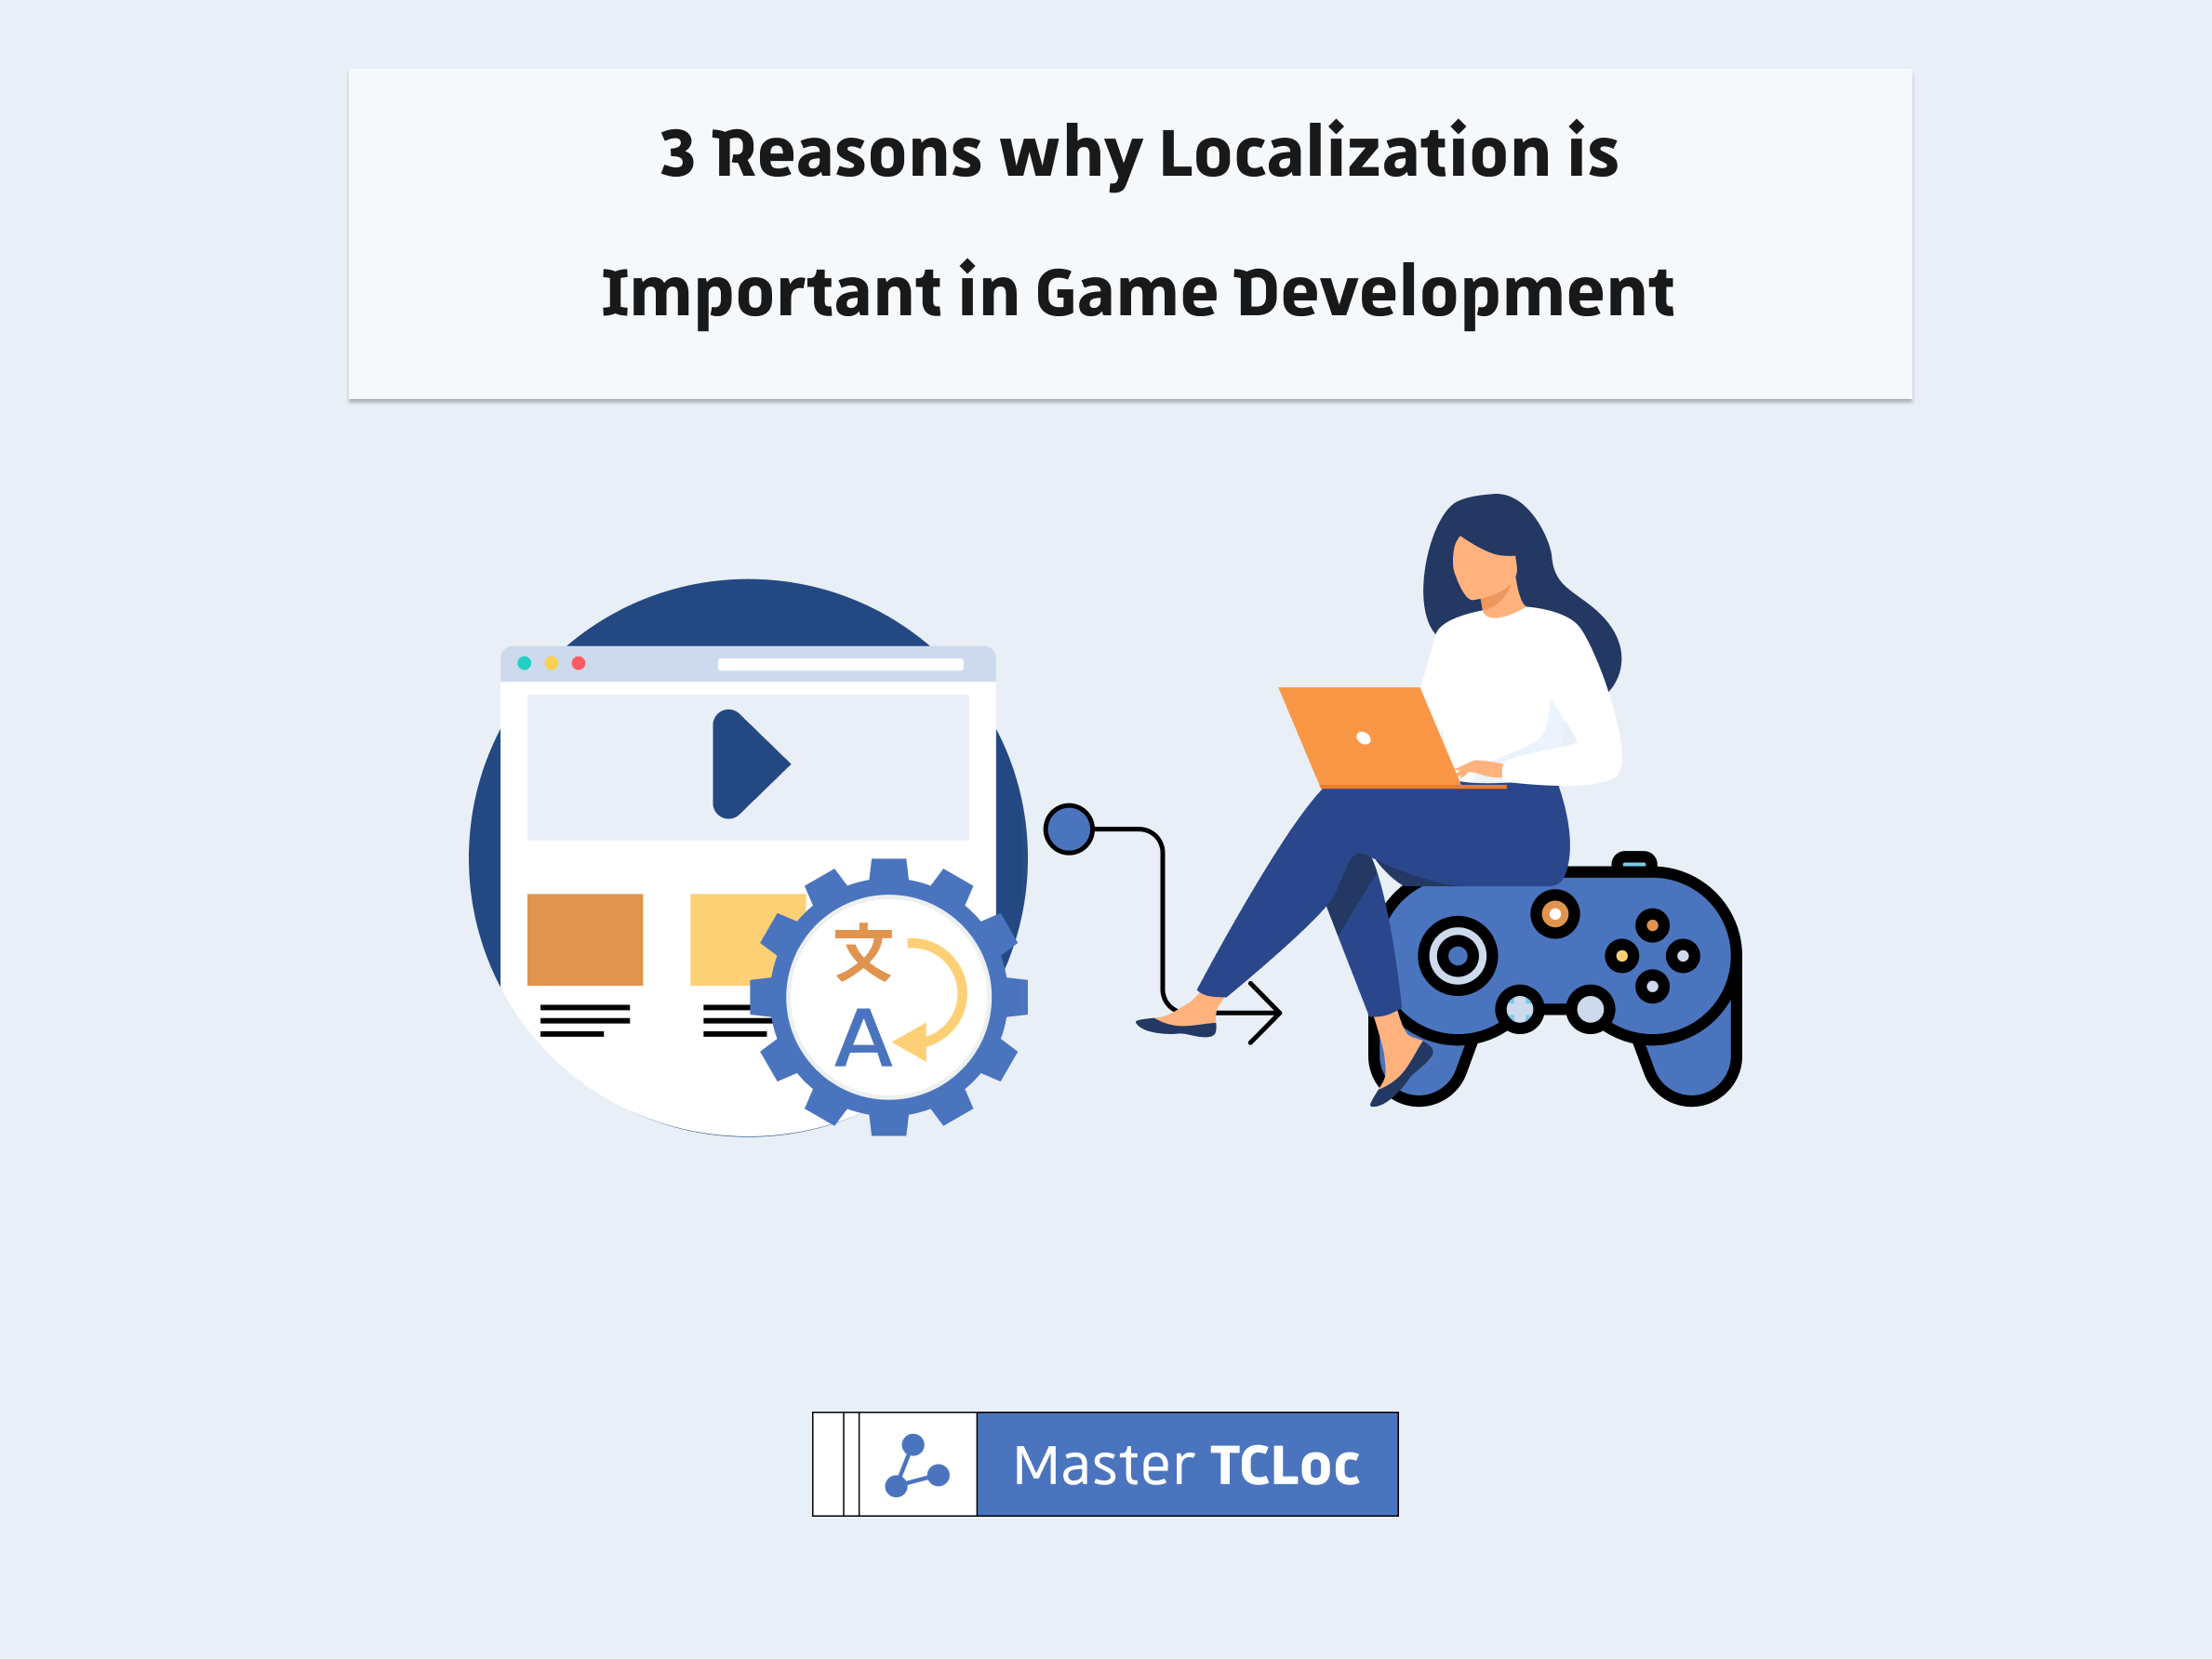 Game localization in game development